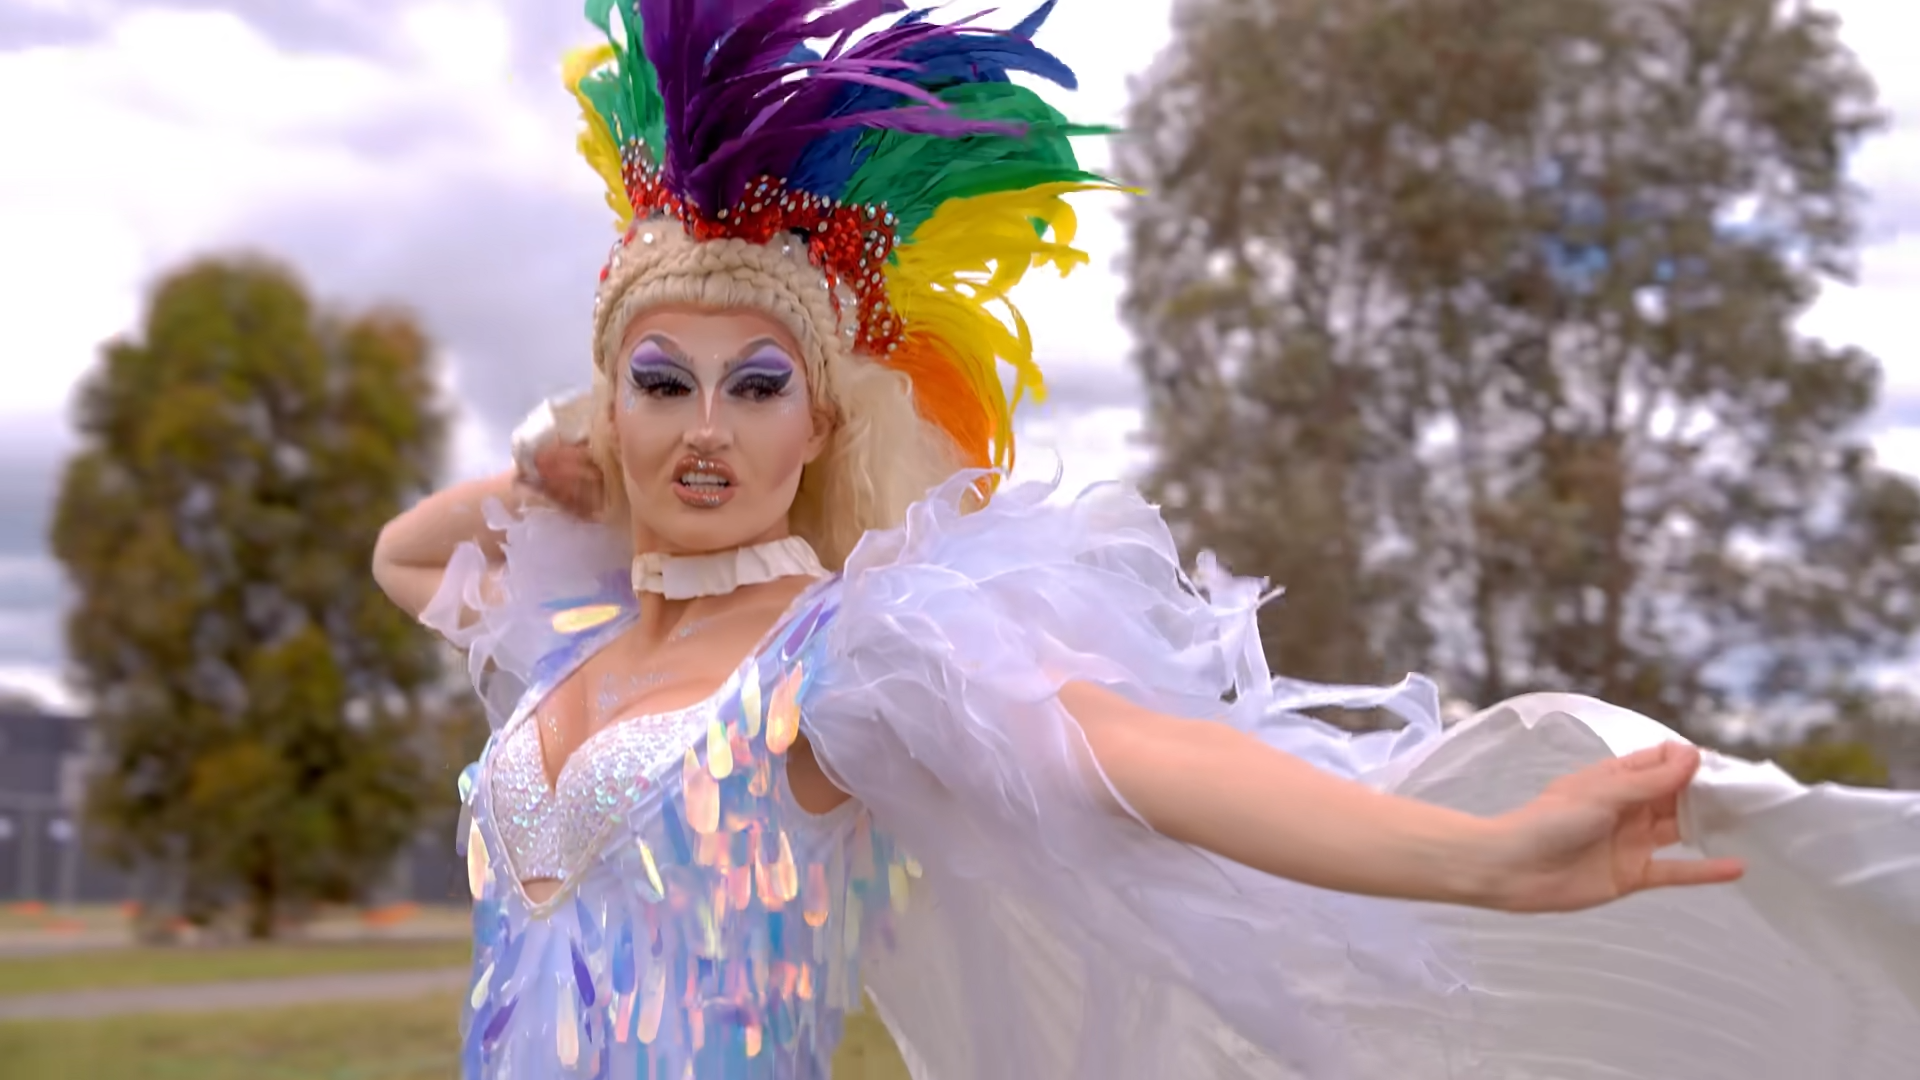 Drag queen dances in "Kangaroo Time"